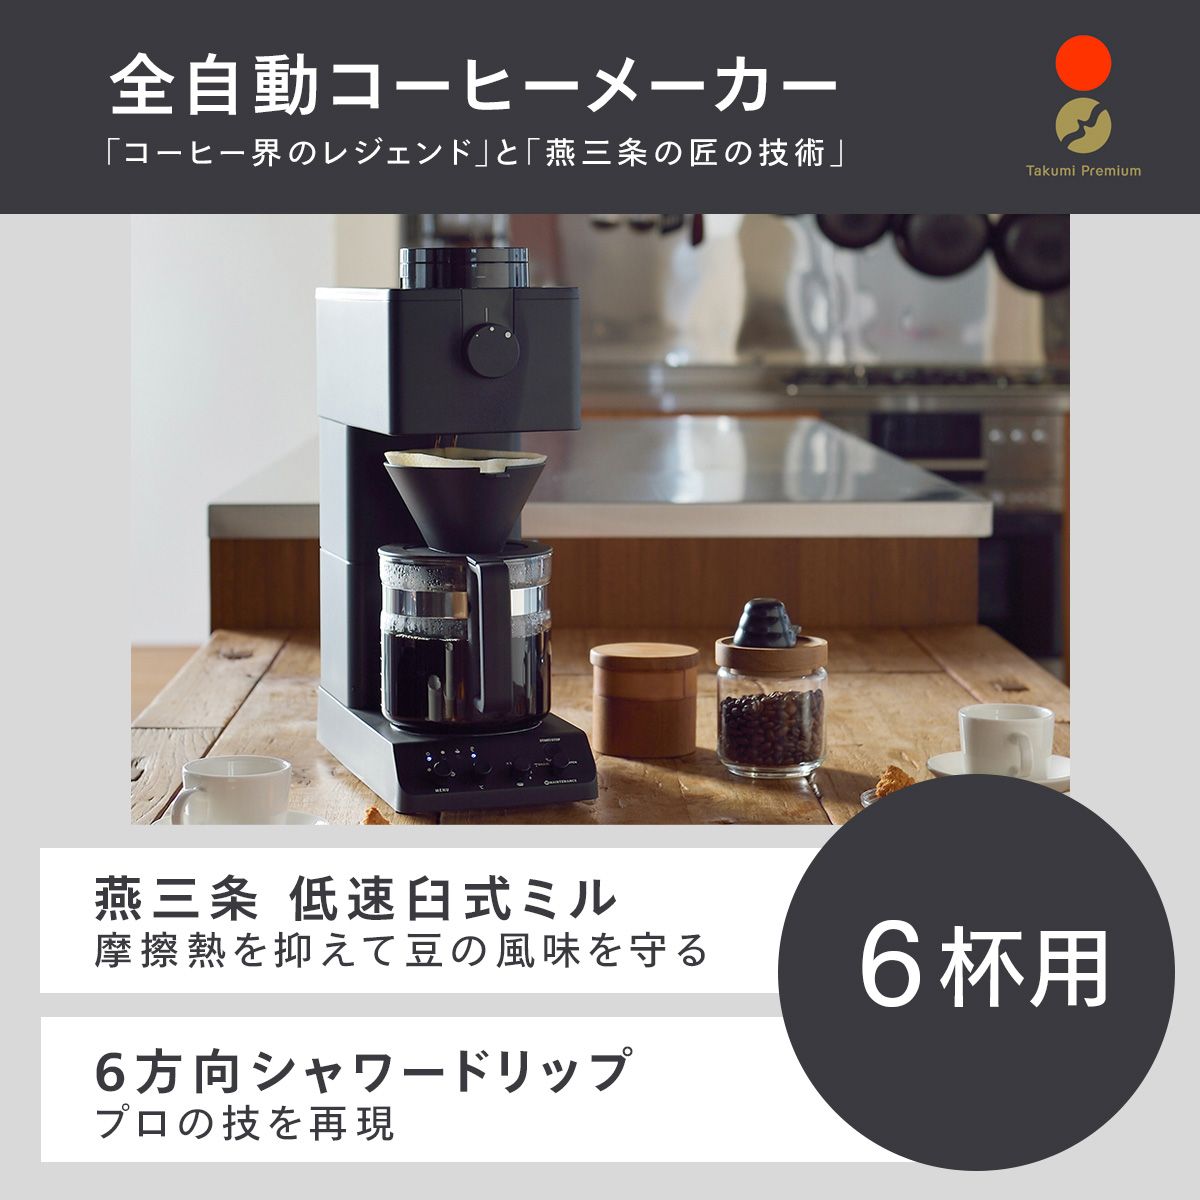 ツインバード 全自動コーヒーメーカー 6杯用 カフェバッハオリジナルフィルターセット CM-D465B-A05 日本製 ブラック